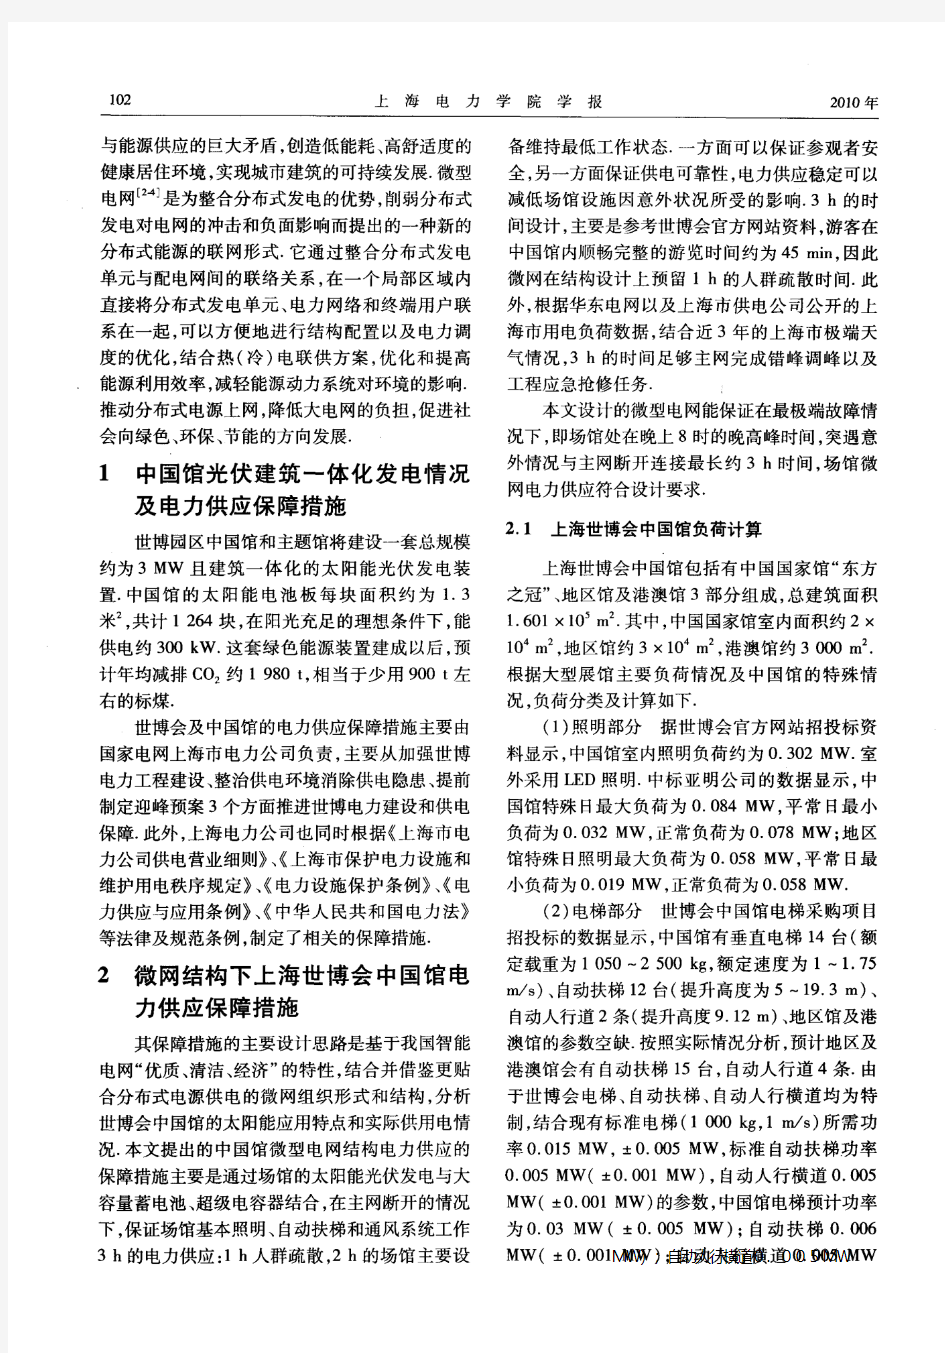 上海世博会中国馆电力供应的保障措施